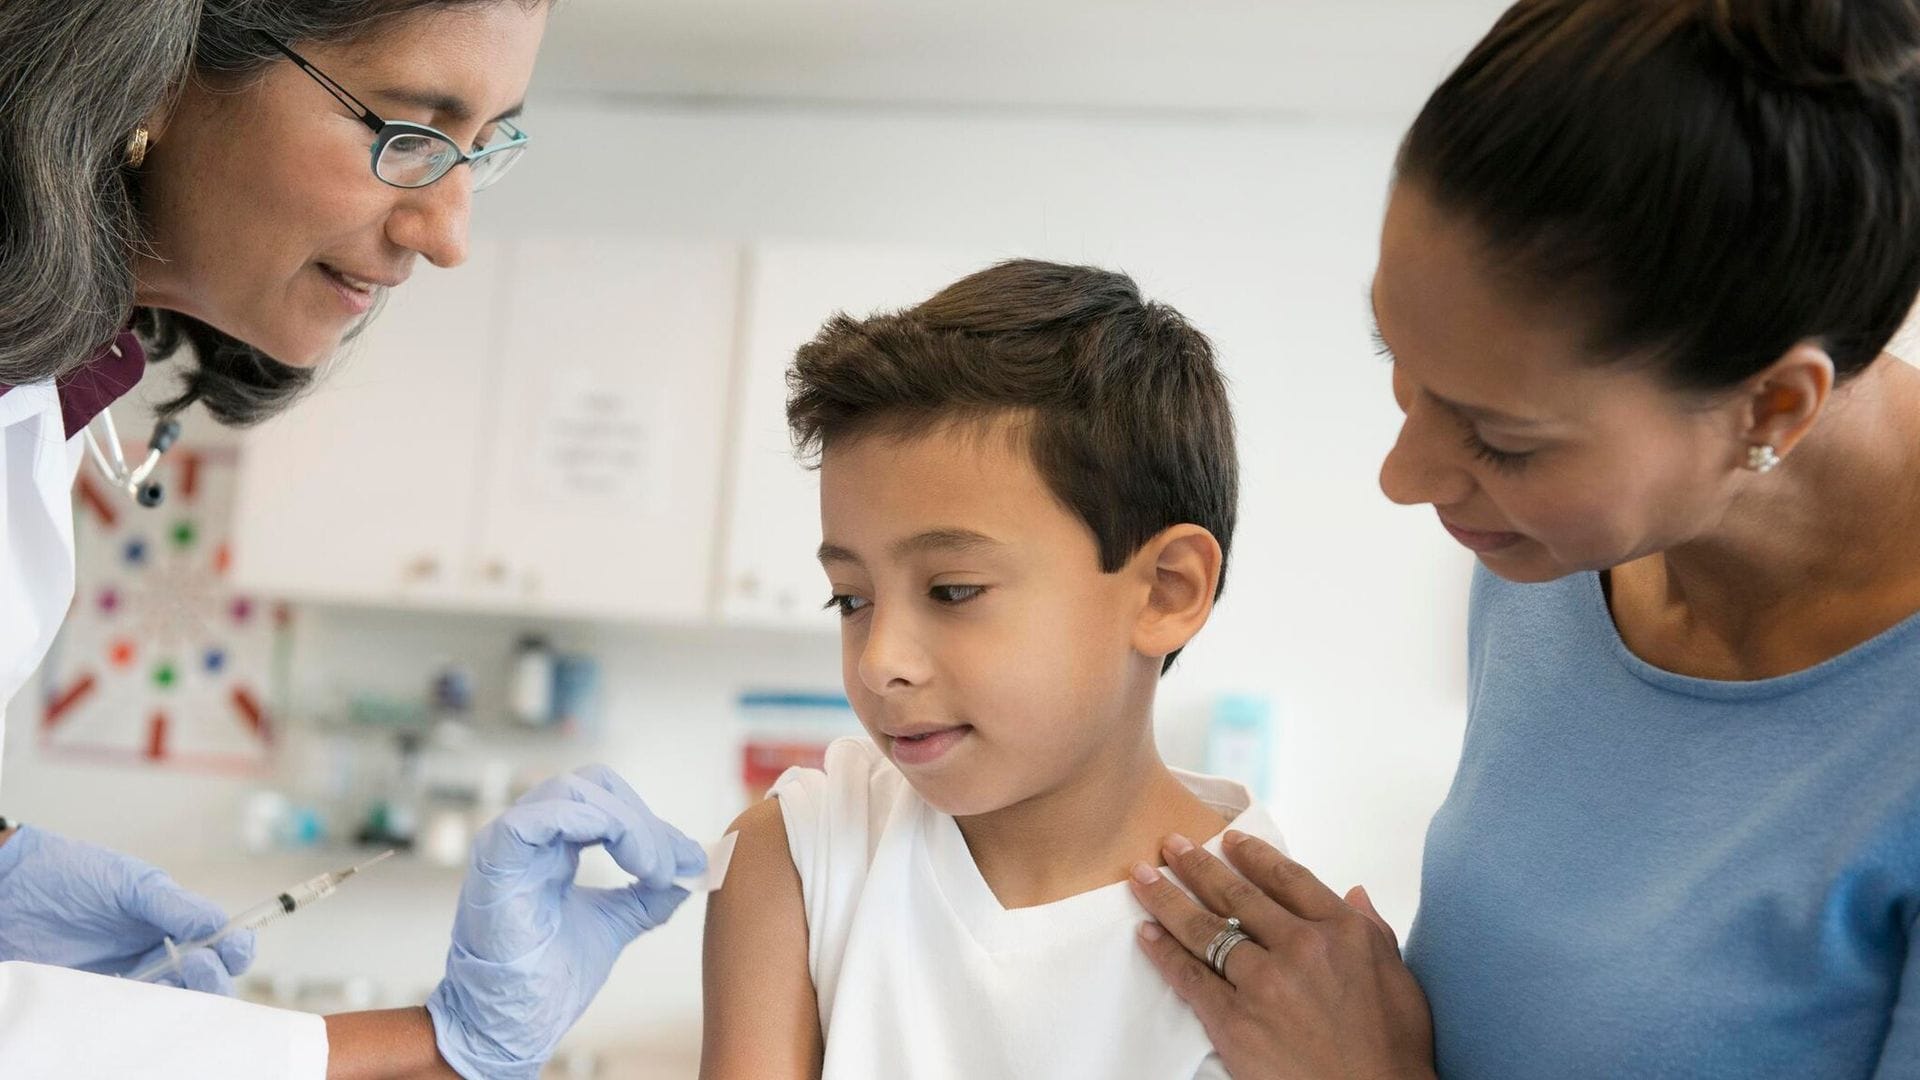 La vacuna de la gripe, ¿es recomendable también para niños sanos mayores de 5 años?